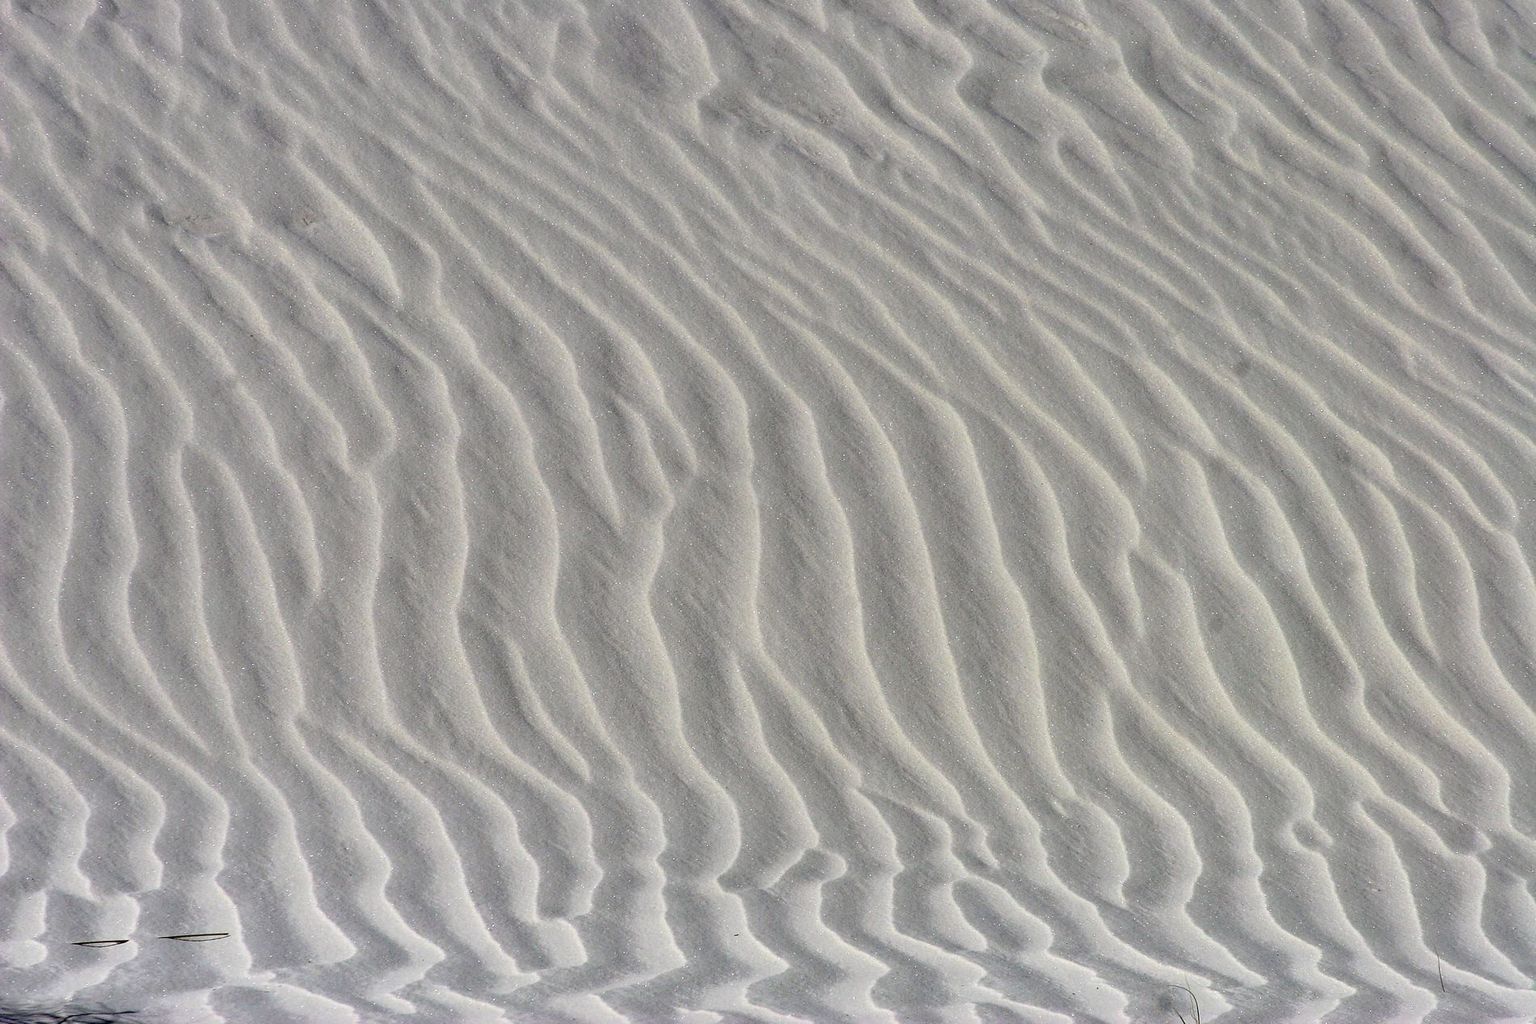 sand dune wind